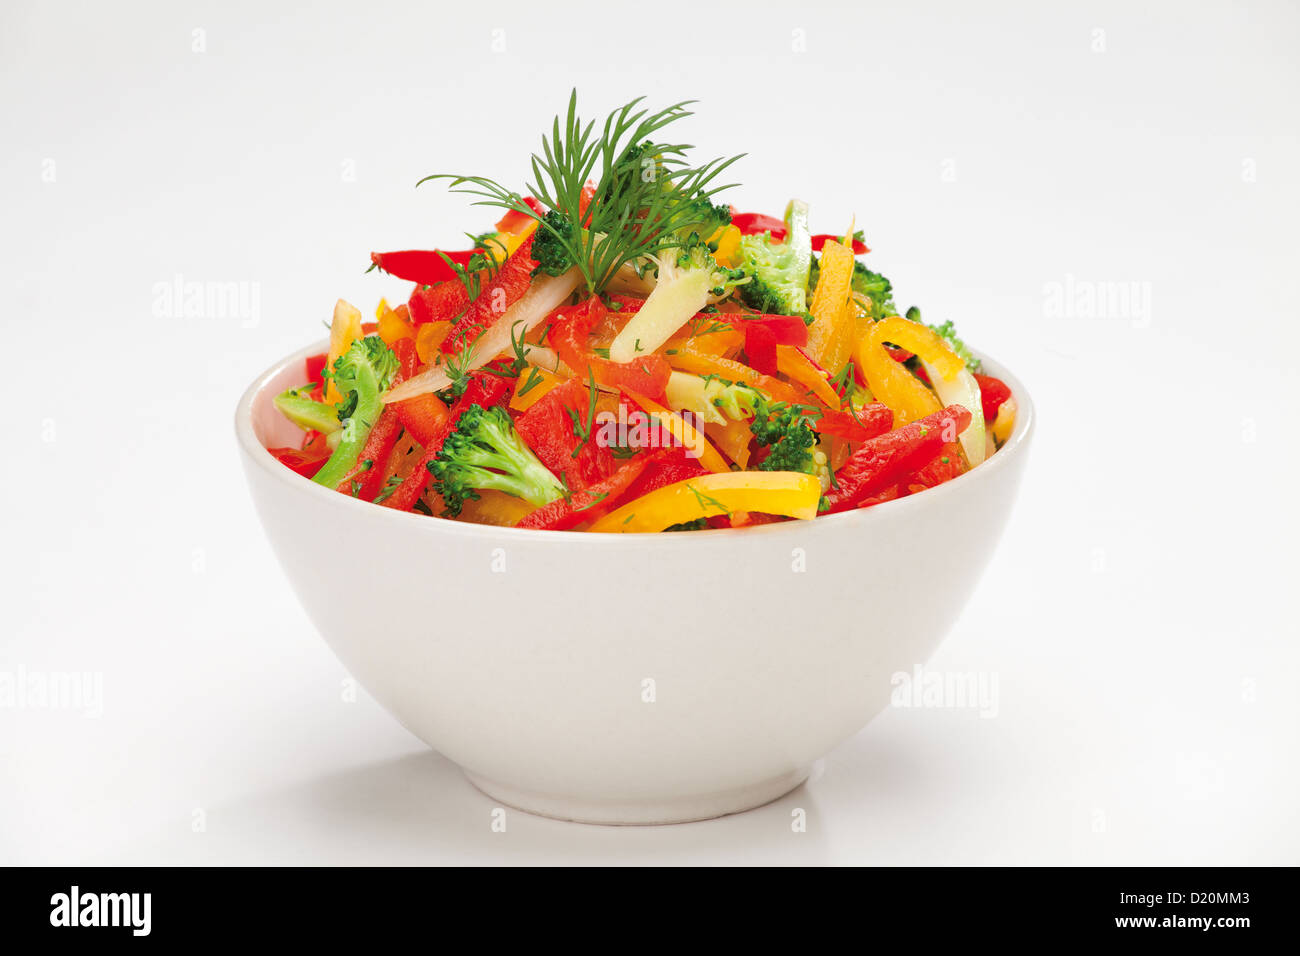 Salade de légumes colorés ou rouge, jaune et orange poivron, brocoli et salade de fenouil Banque D'Images